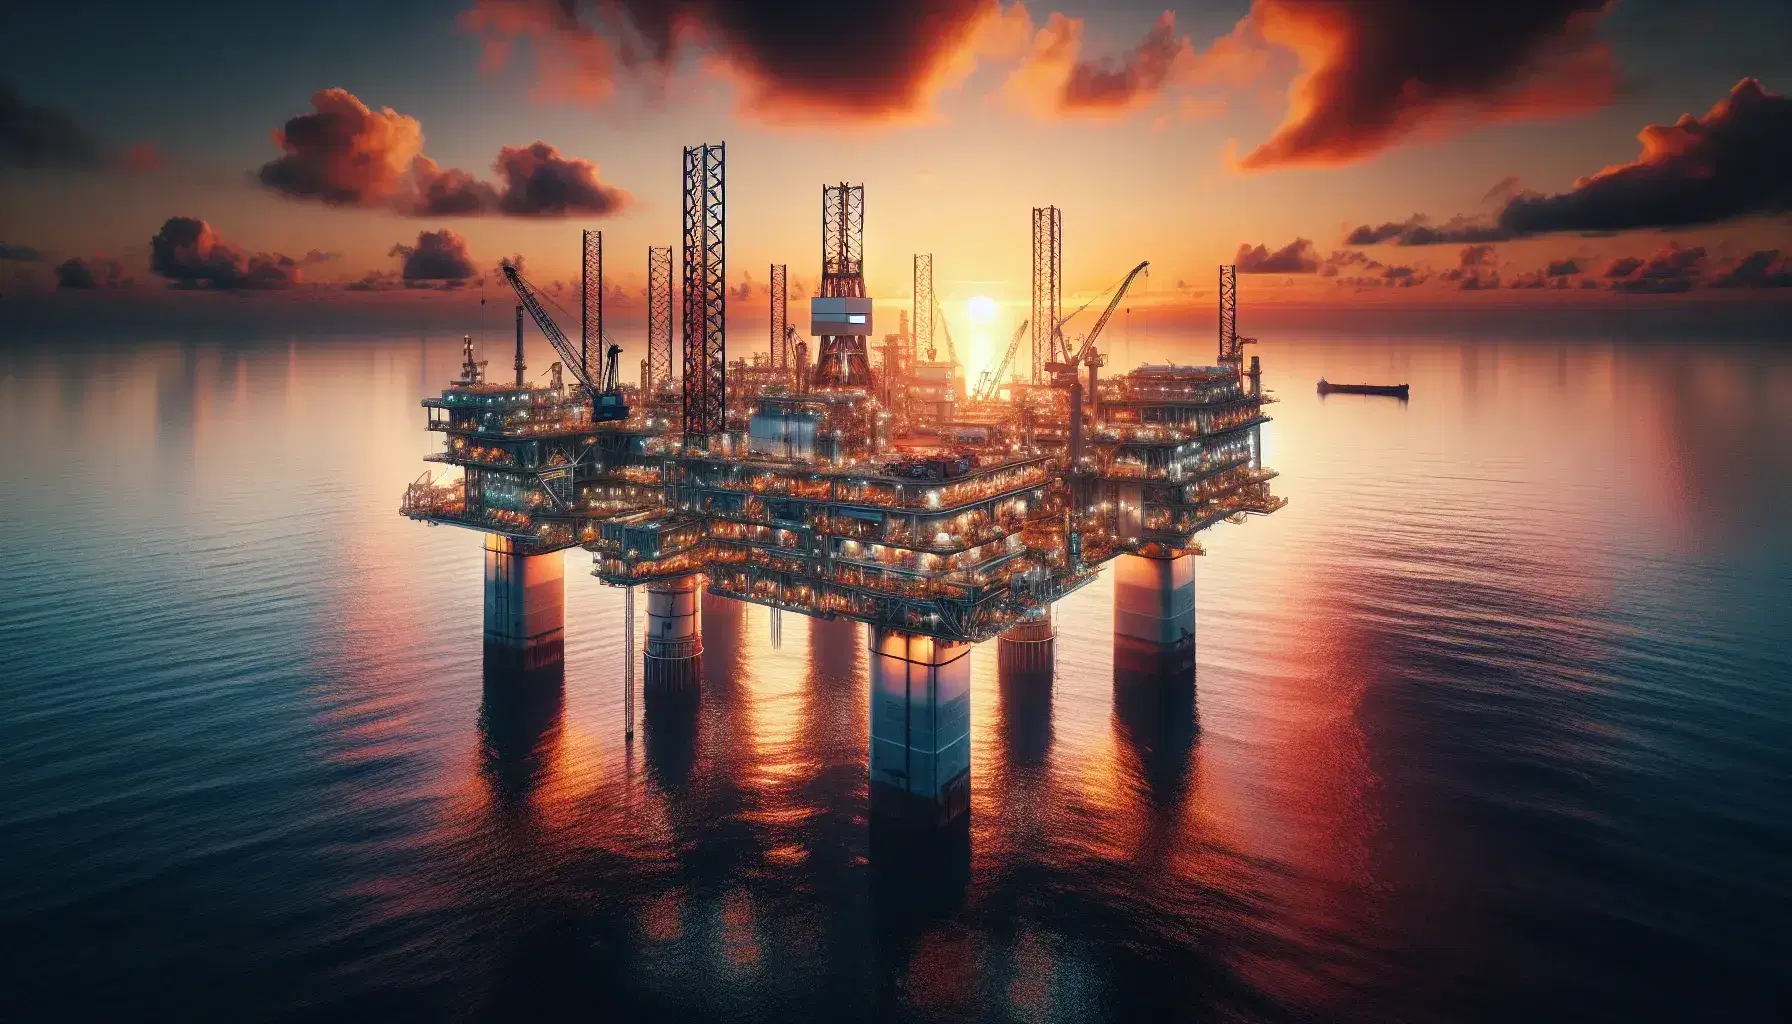 Piattaforma petrolifera offshore al tramonto con cielo arancione e rosa, pilastri immersi in acque calme e silhouette di una petroliera in lontananza.